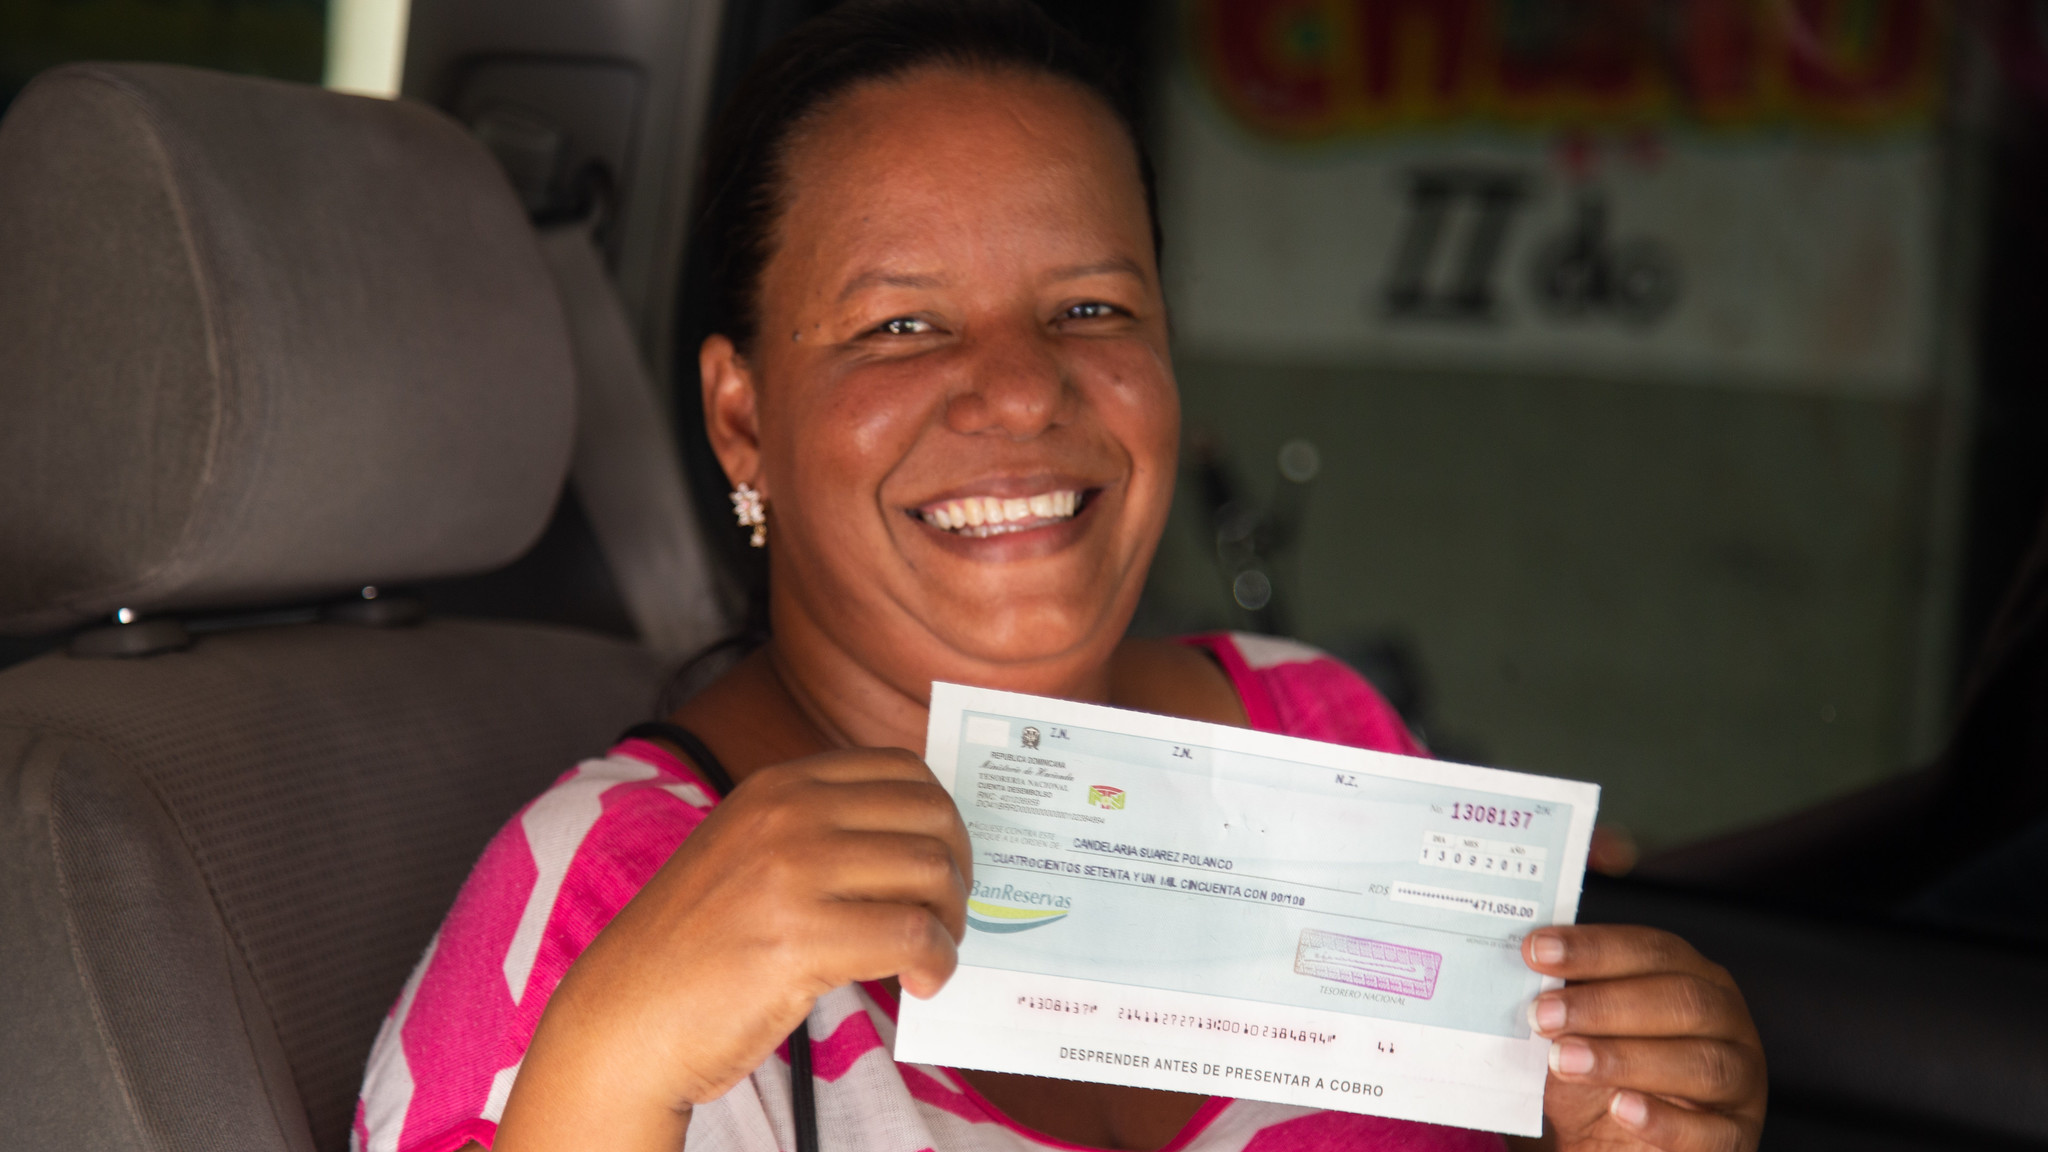 REPÚBLICA DOMINICANA: Ya nos vamos. Es verdad: familias de Nuevo Domingo Savio entusiasmadas con traslado y cambio de vida